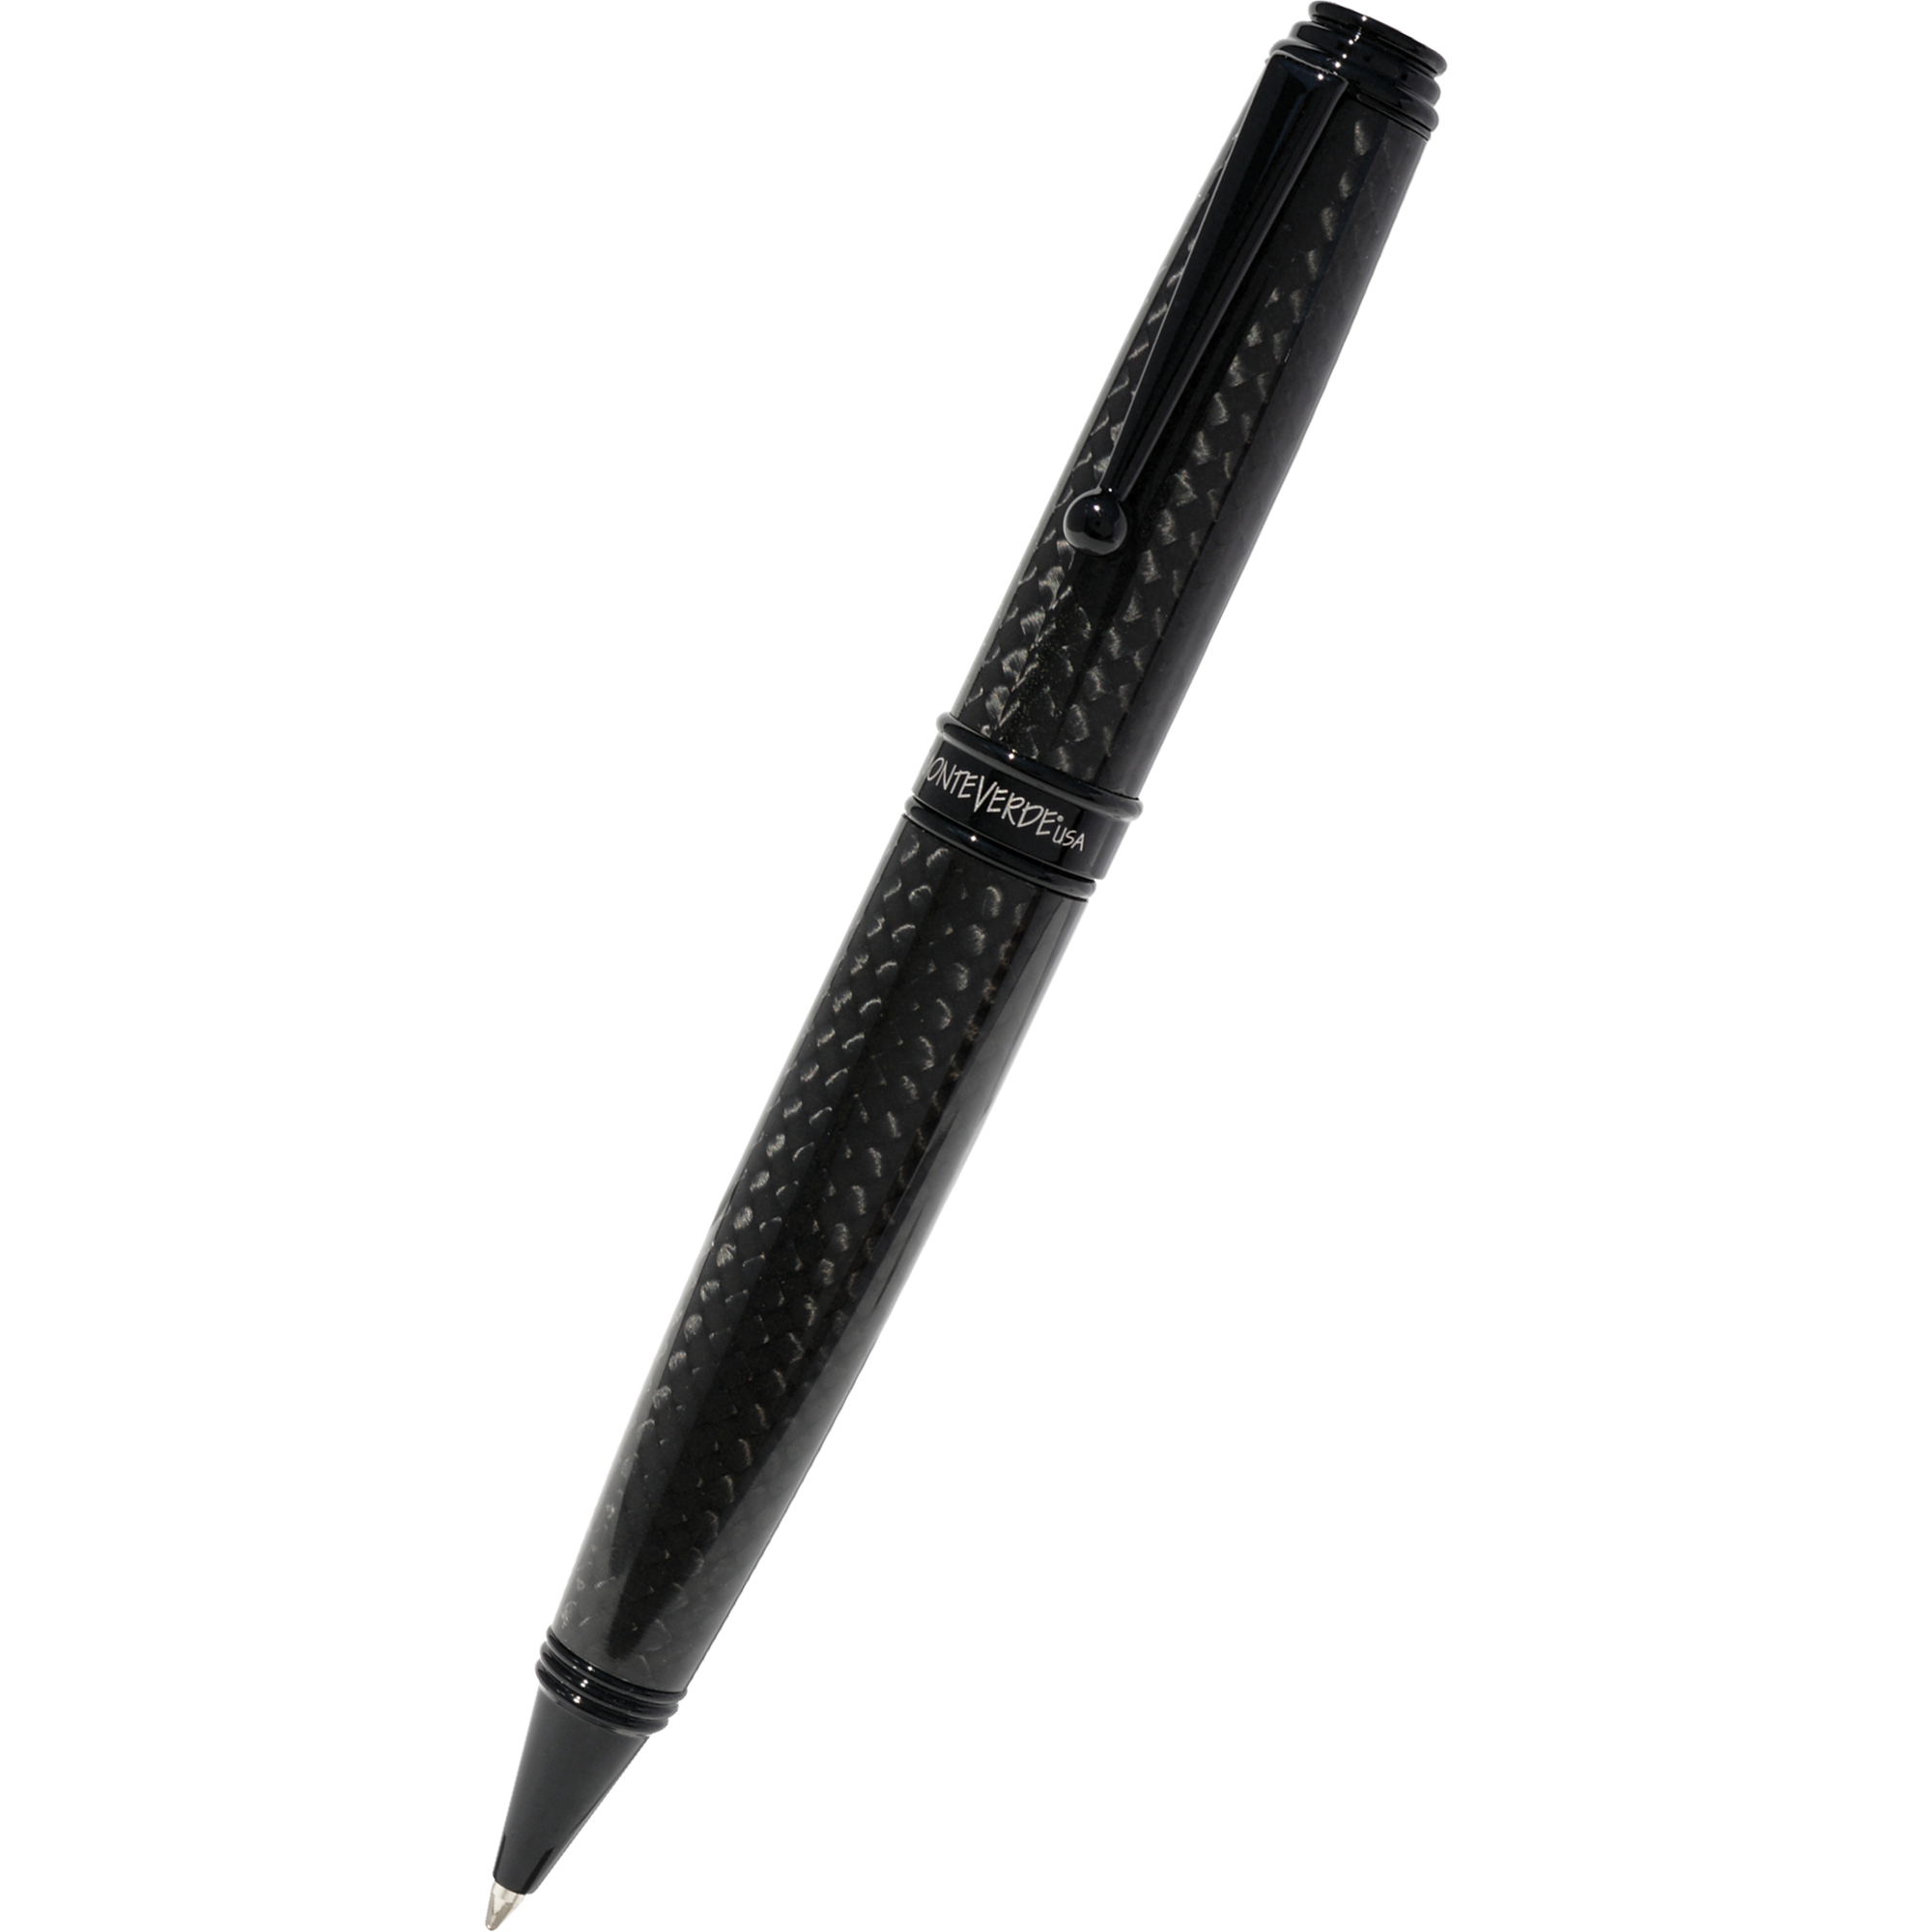 Monteverde Invincia Deluxe Black Ballpoint Pen-Pen Boutique Ltd